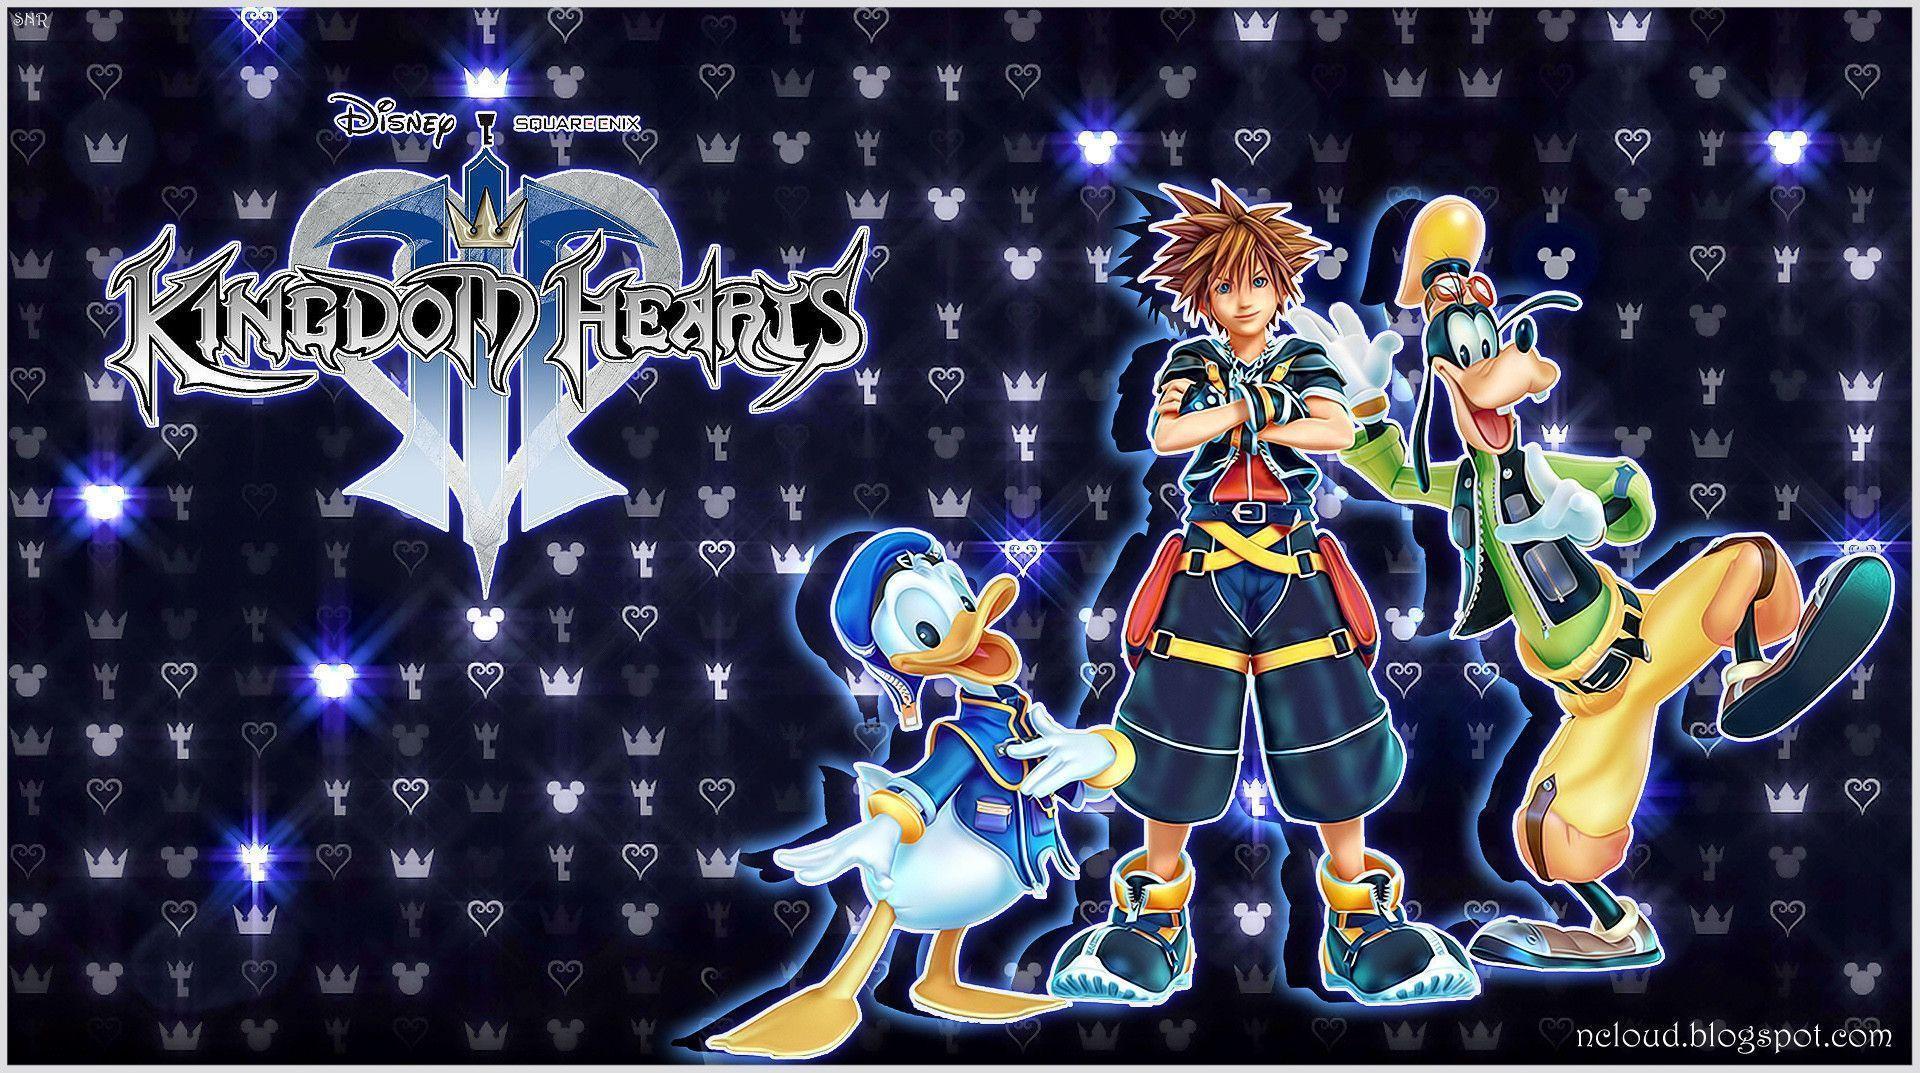 99+] Kingdom Hearts III Wallpapers - WallpaperSafari